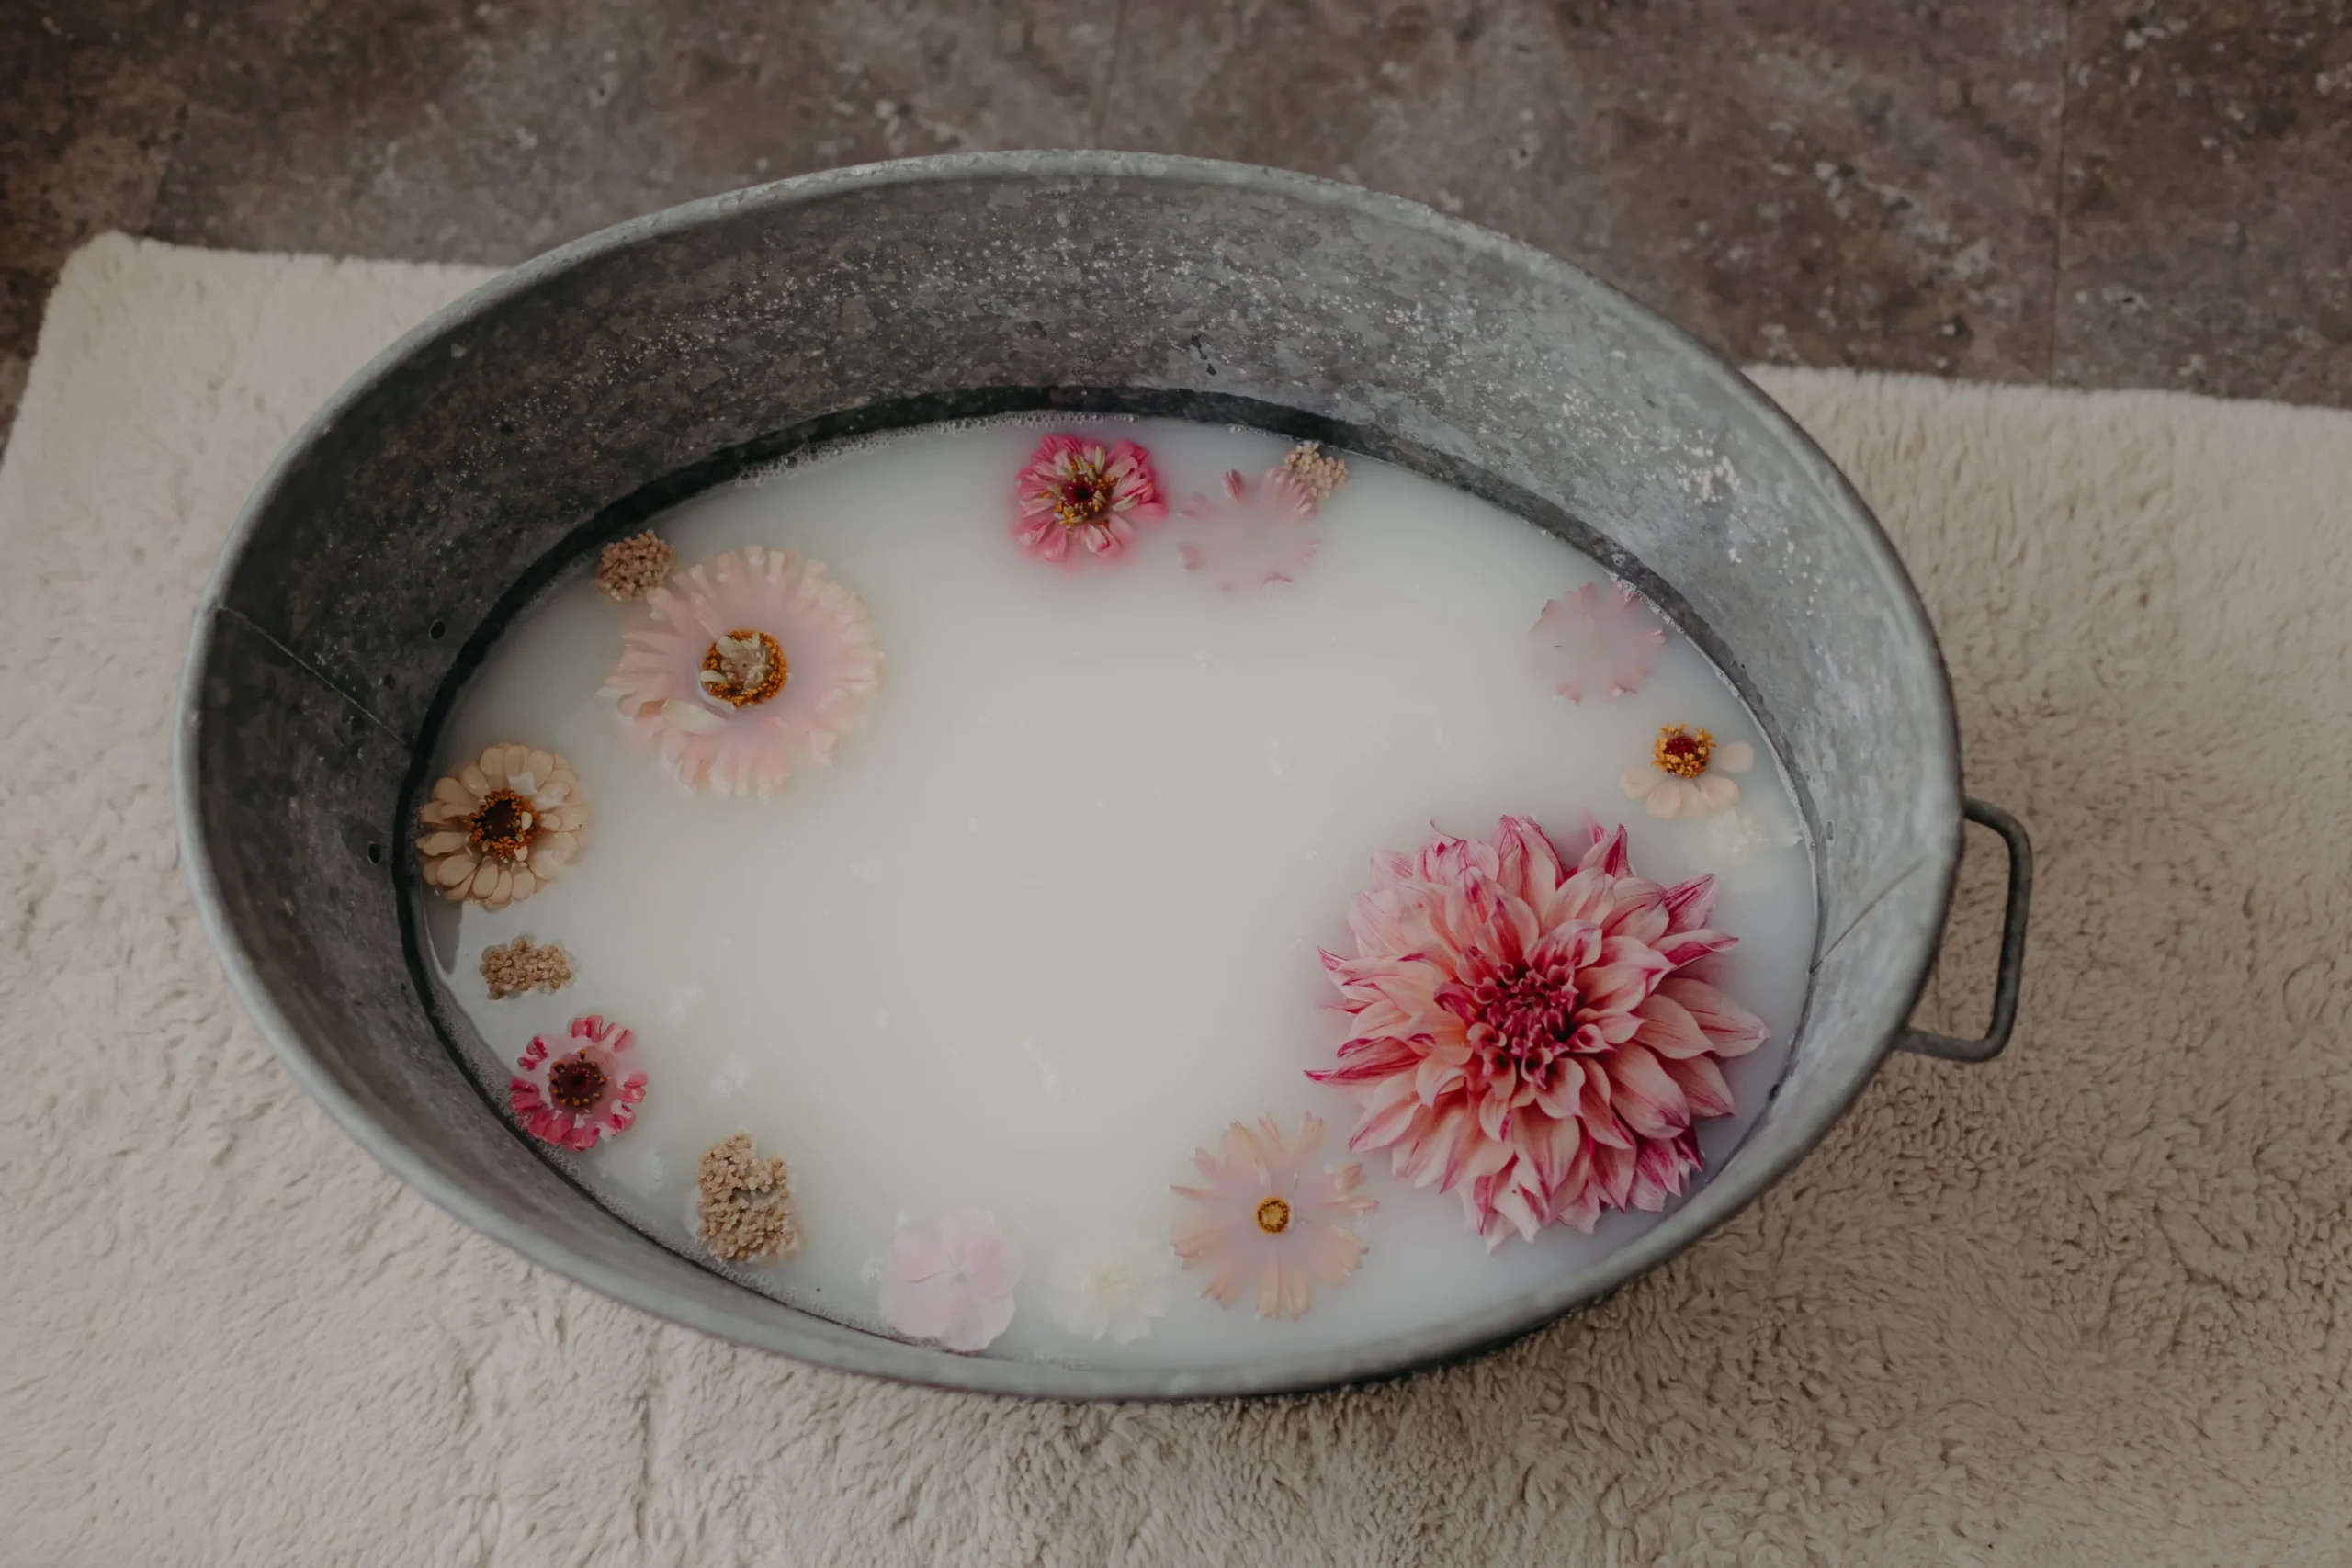 Séance baindelait floral